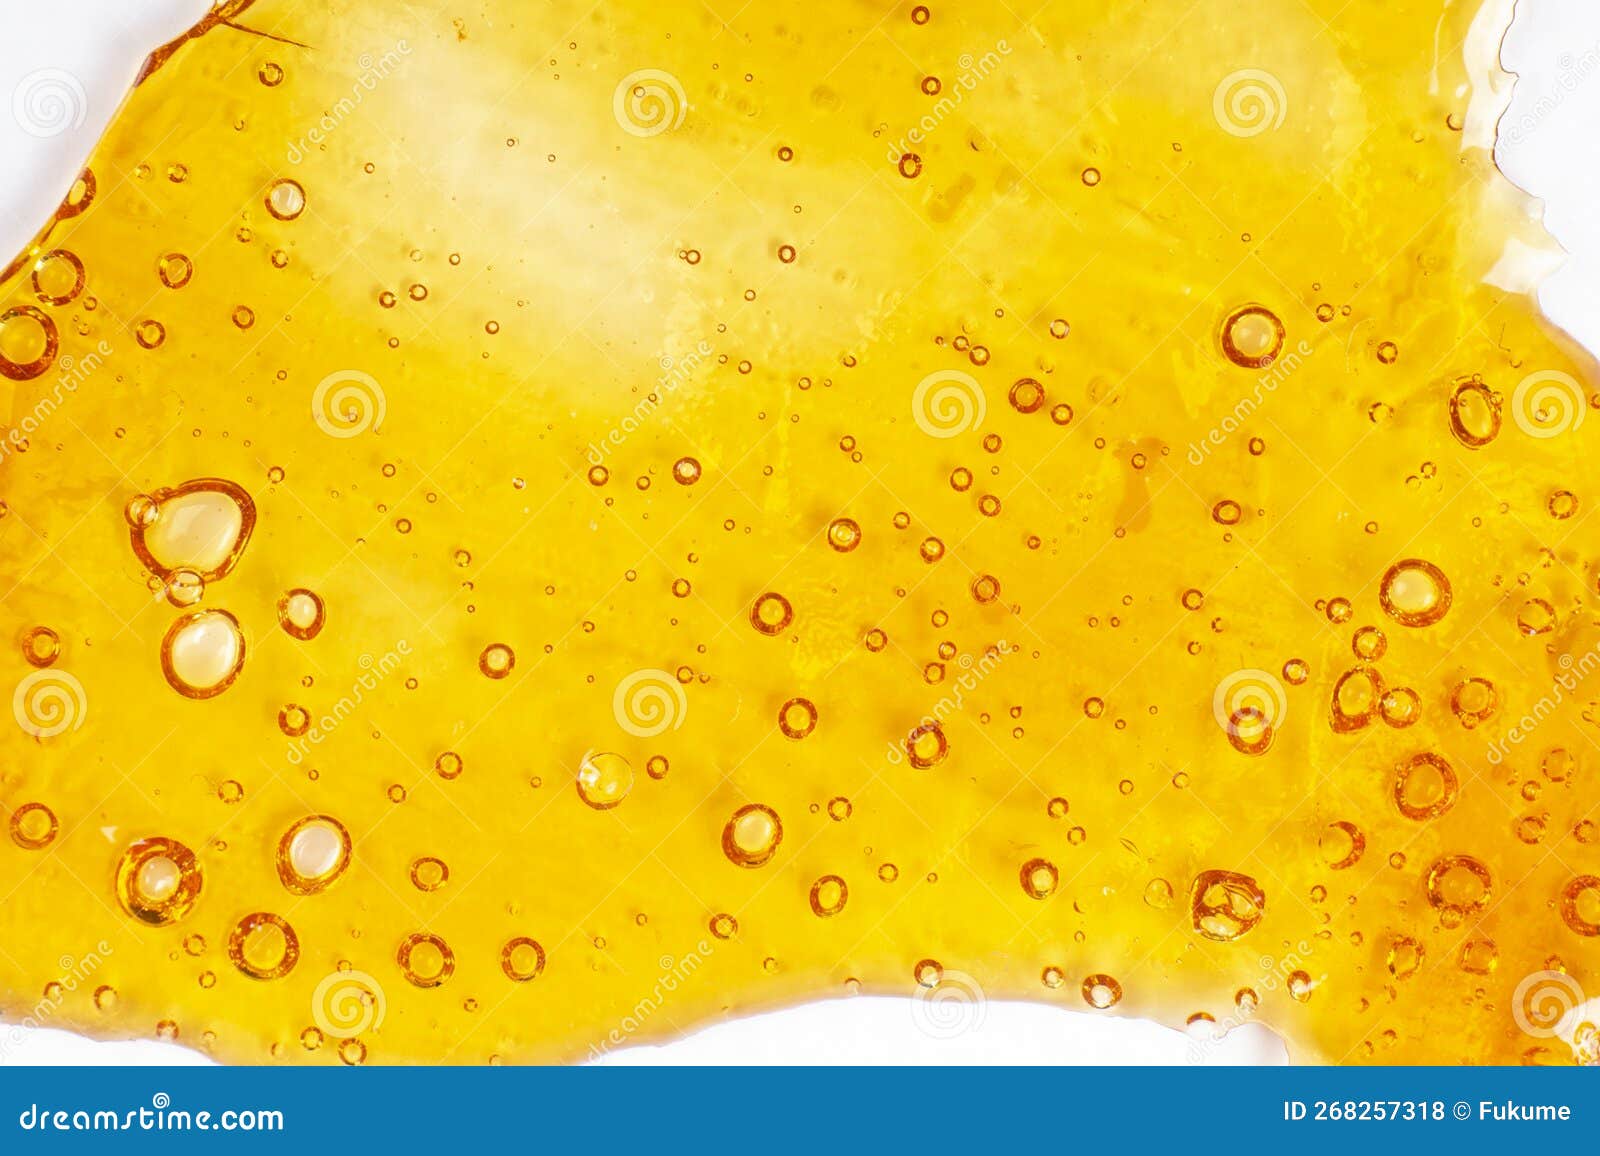 Extrait Solide De Cire De Cannabis D'or Avec Haute Thc Gros Plan Bulle De  La Texture Sur Papier Photo stock - Image du herbe, médical: 268257318